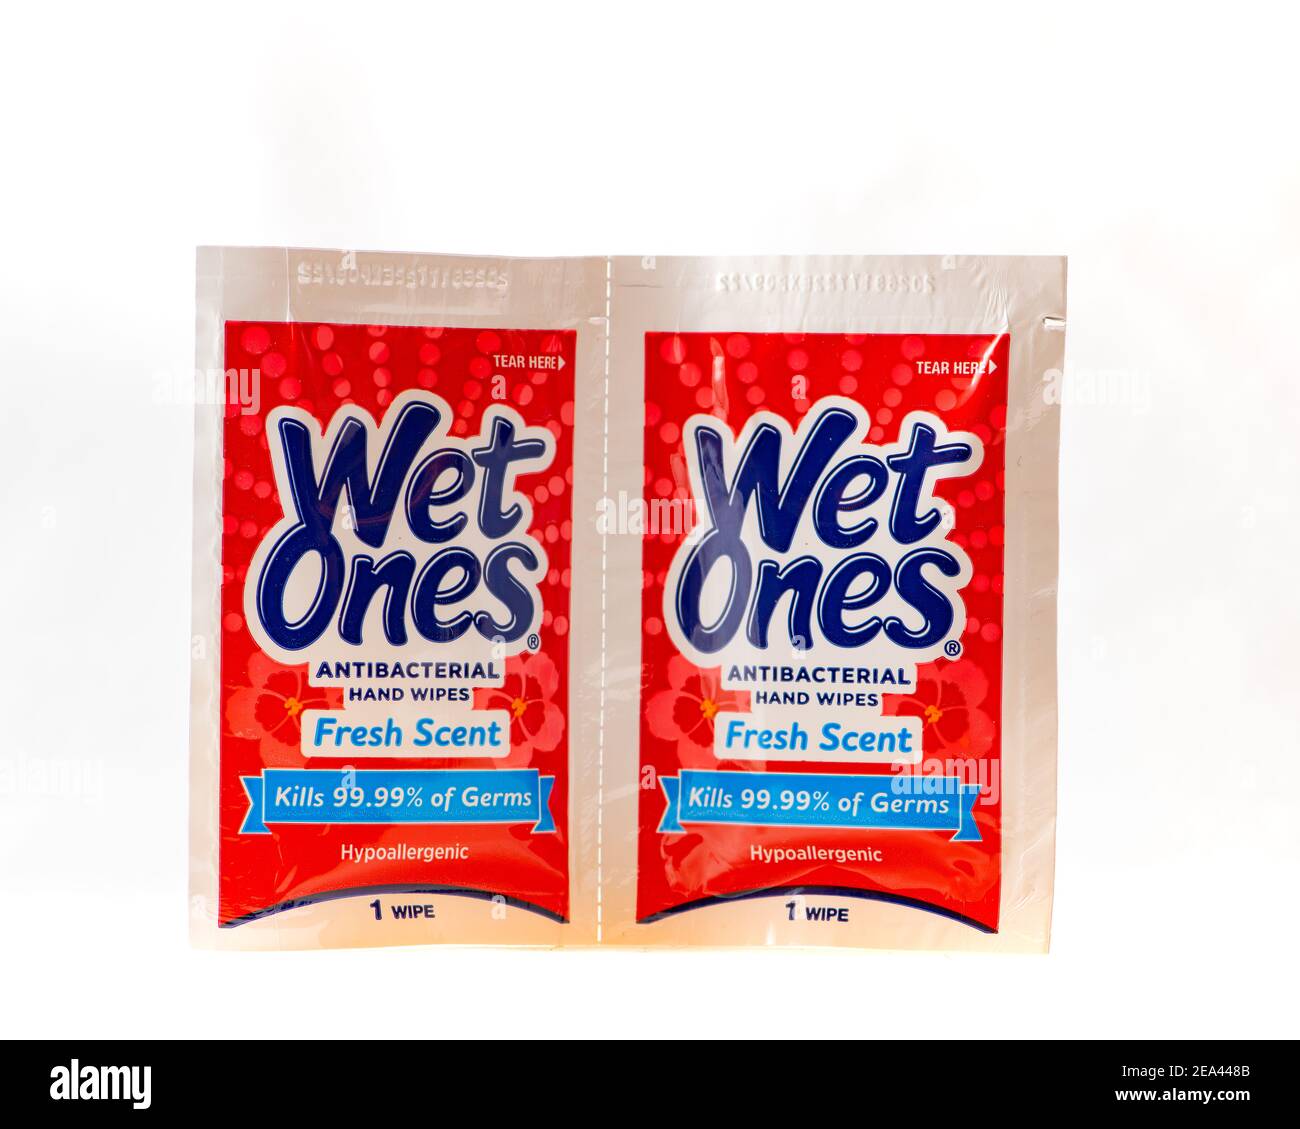 Zwei Taschentüchern Größe nass eine antibakterielle hypoallergene Handtücher Singles, für die Tötung 99,99% der Keime. Stockfoto